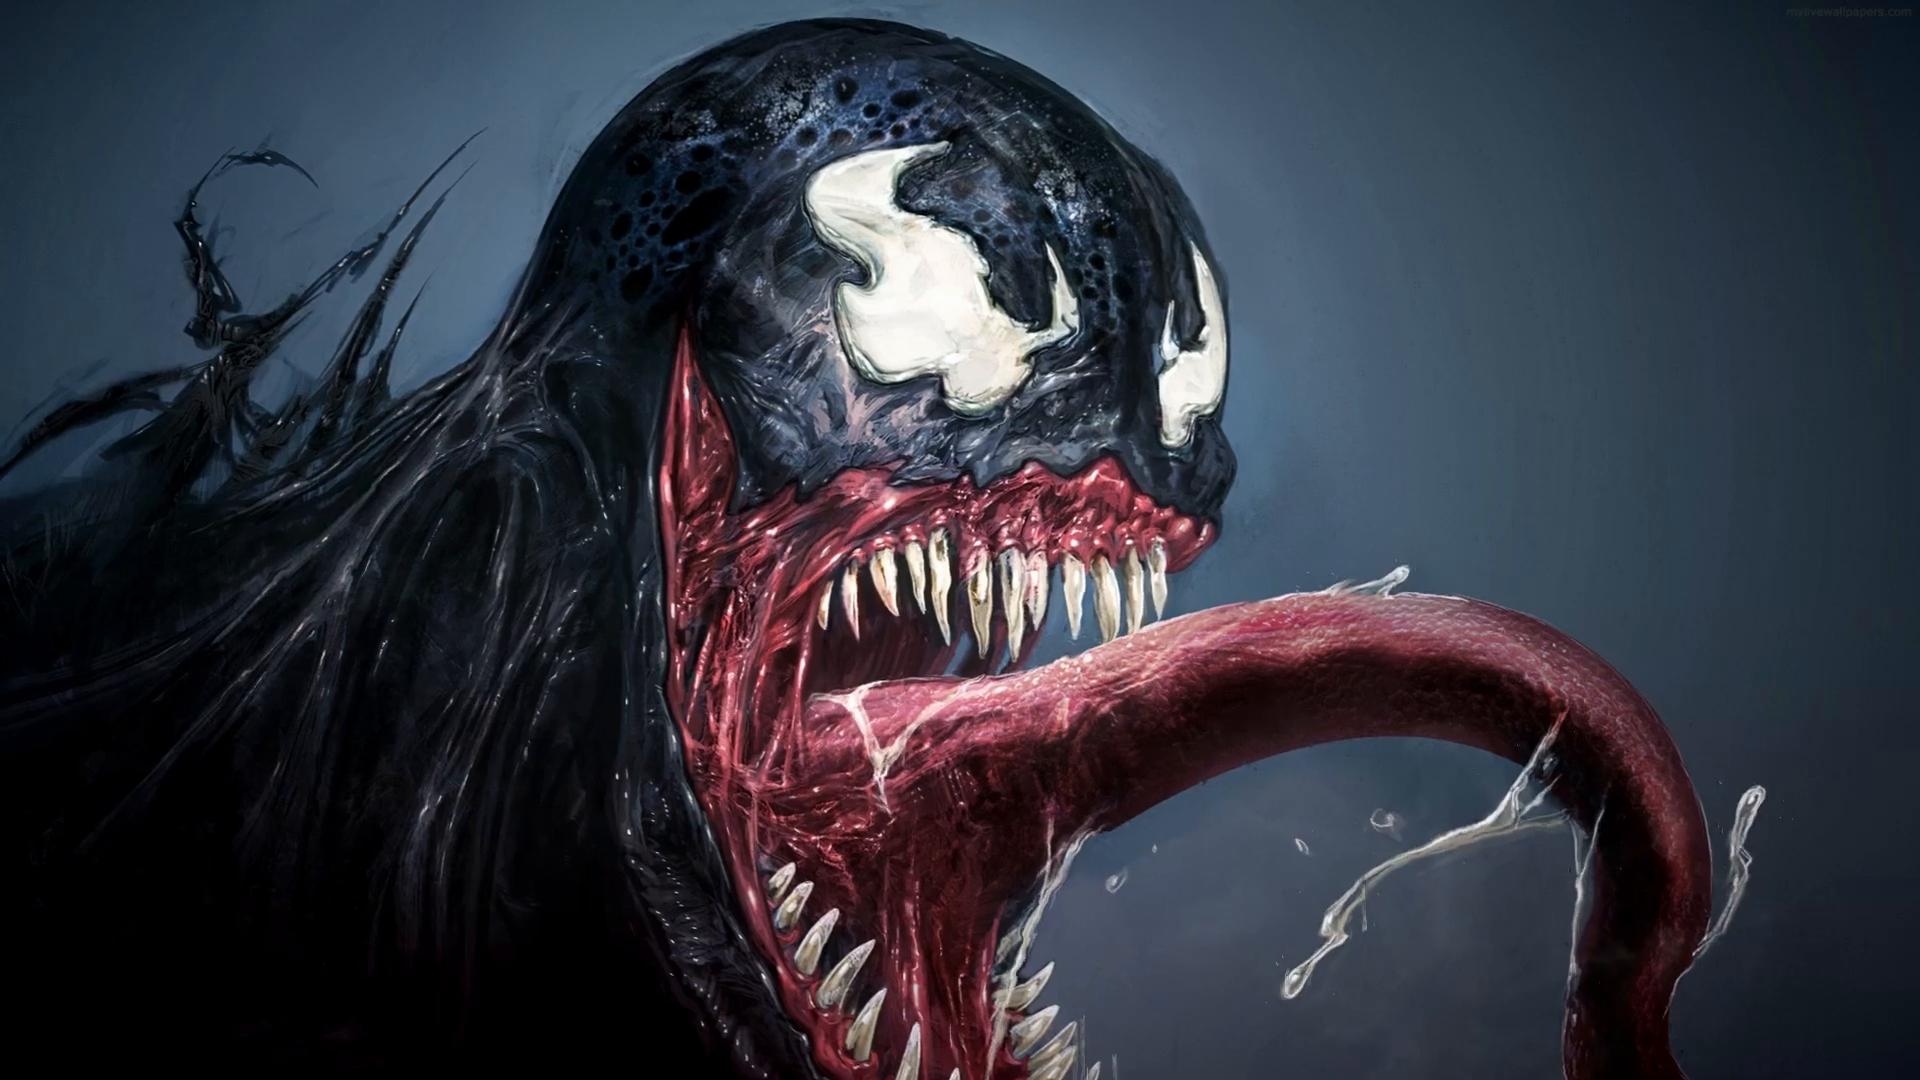 Venom taking Over Spider Man HD wallpaper  Peakpx